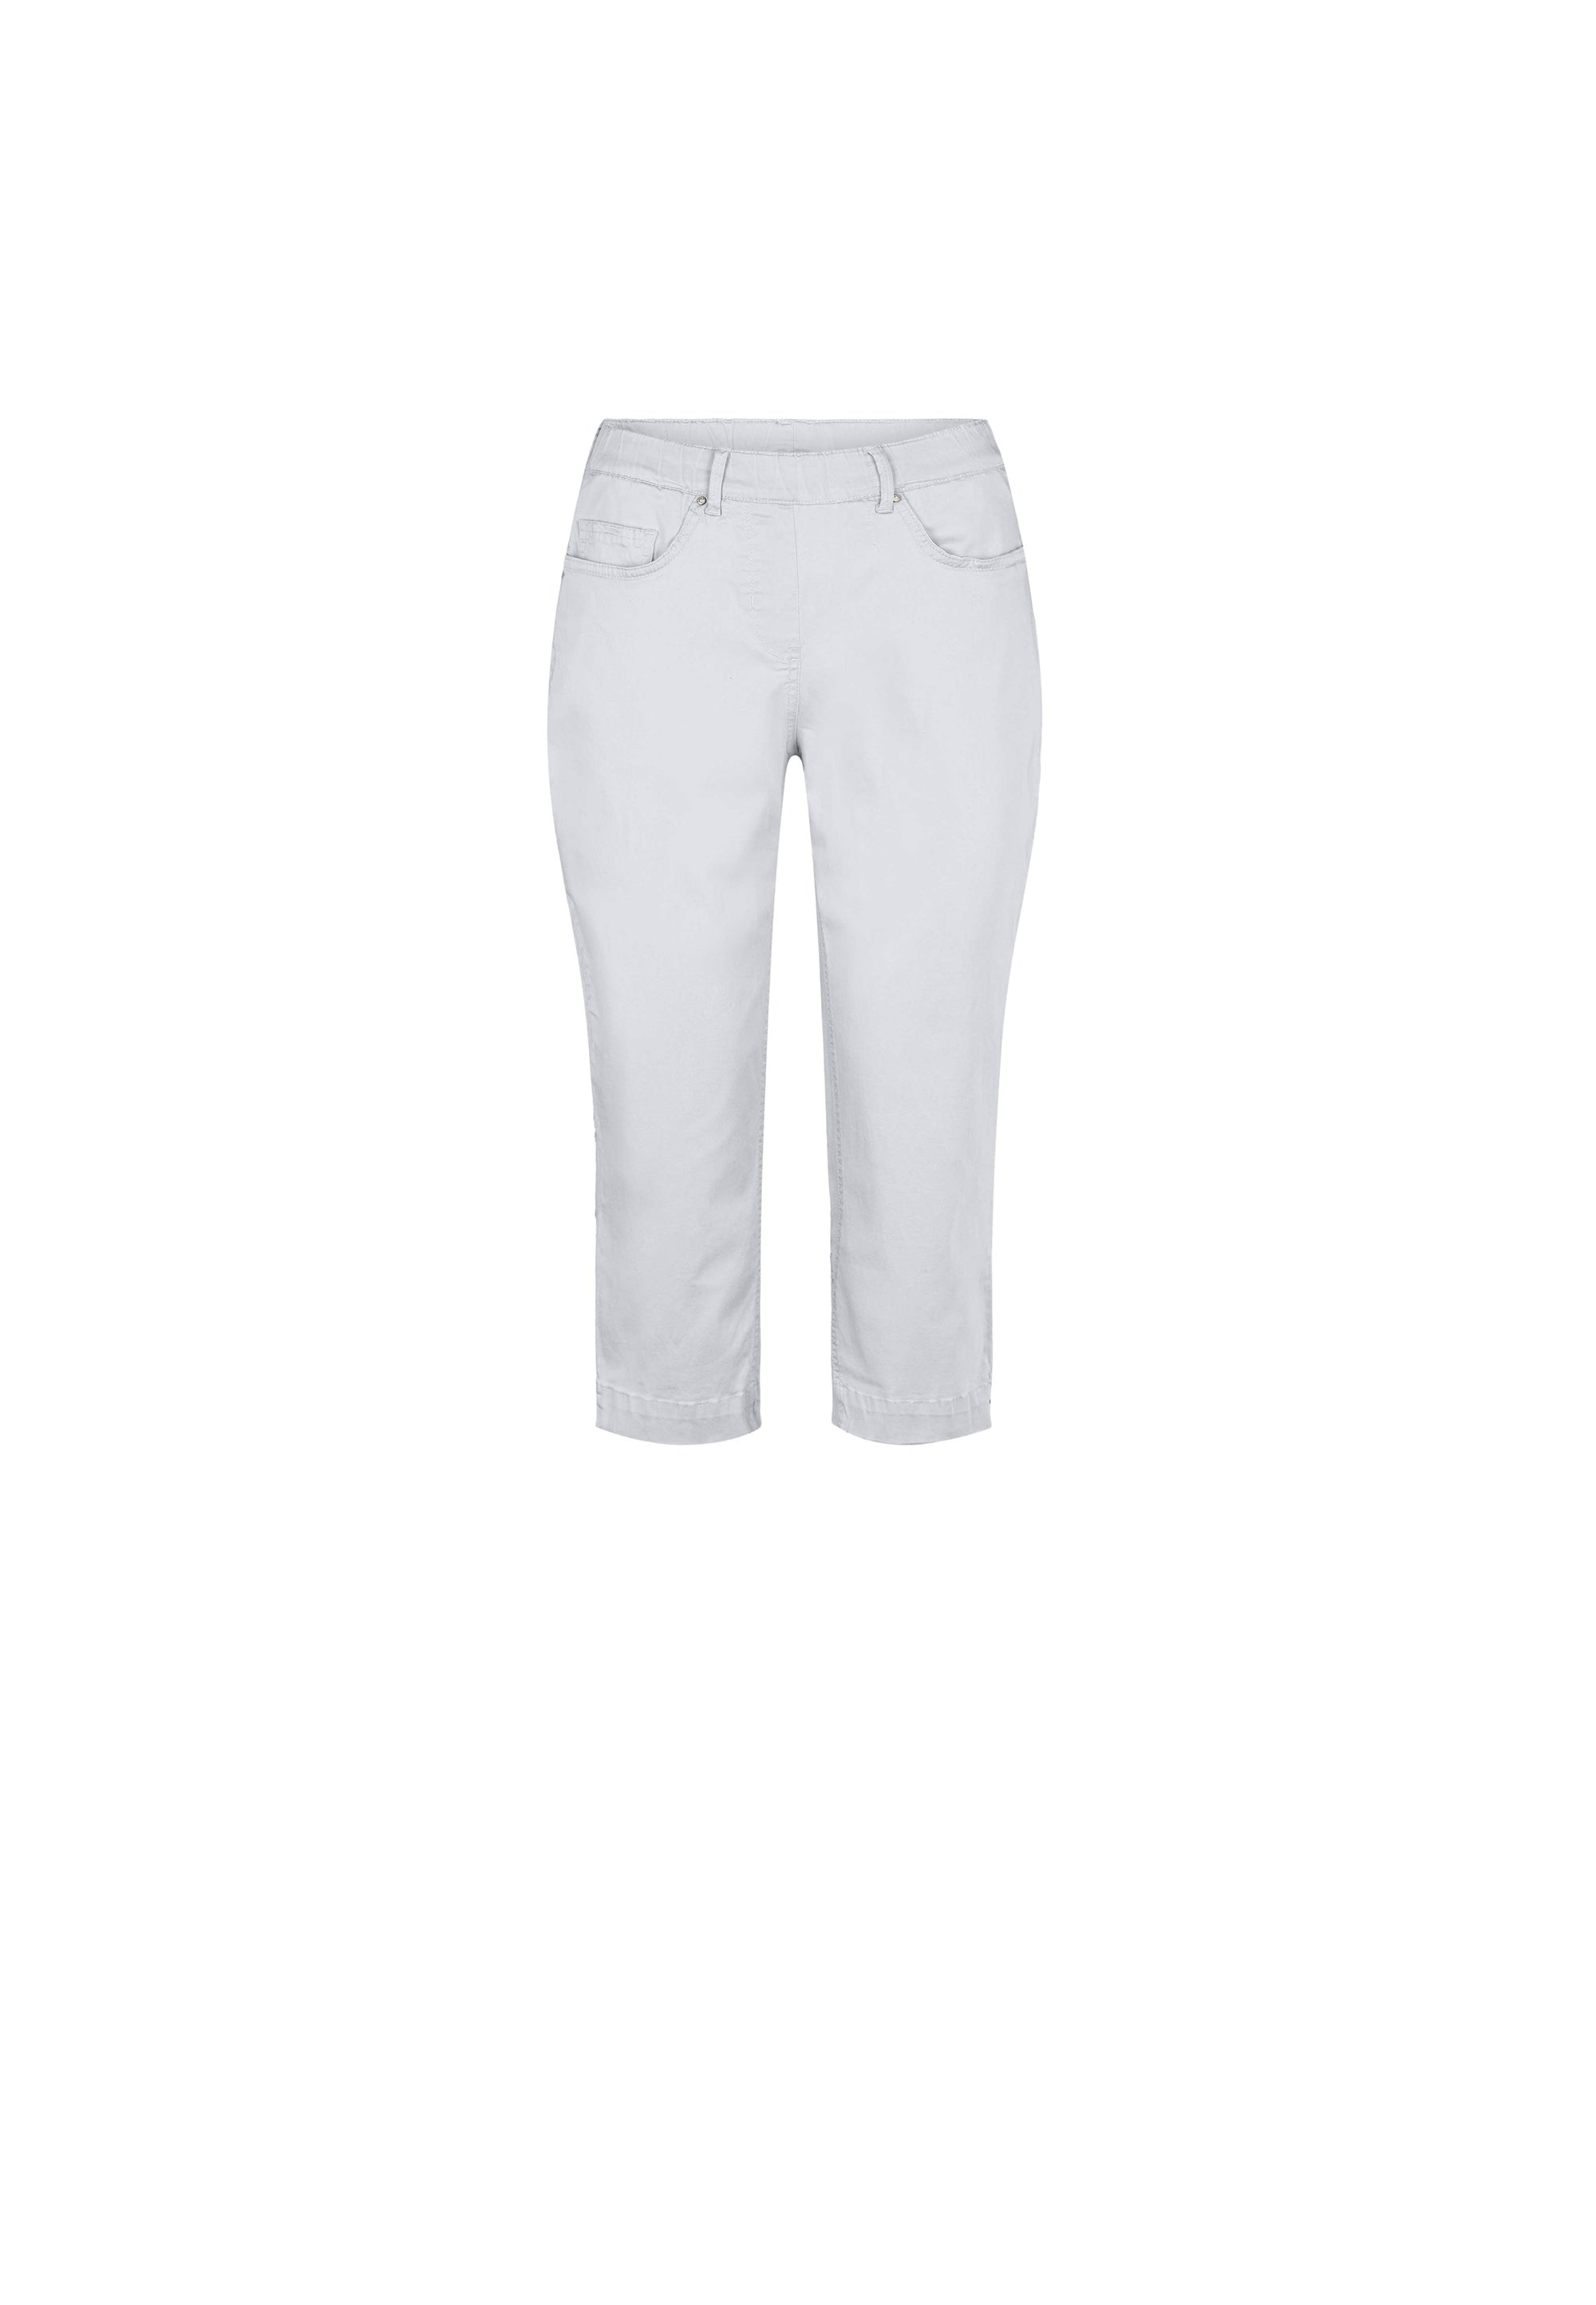 LAURIE Hannah Regular Byxor Capri Trousers REGULAR 10122 White